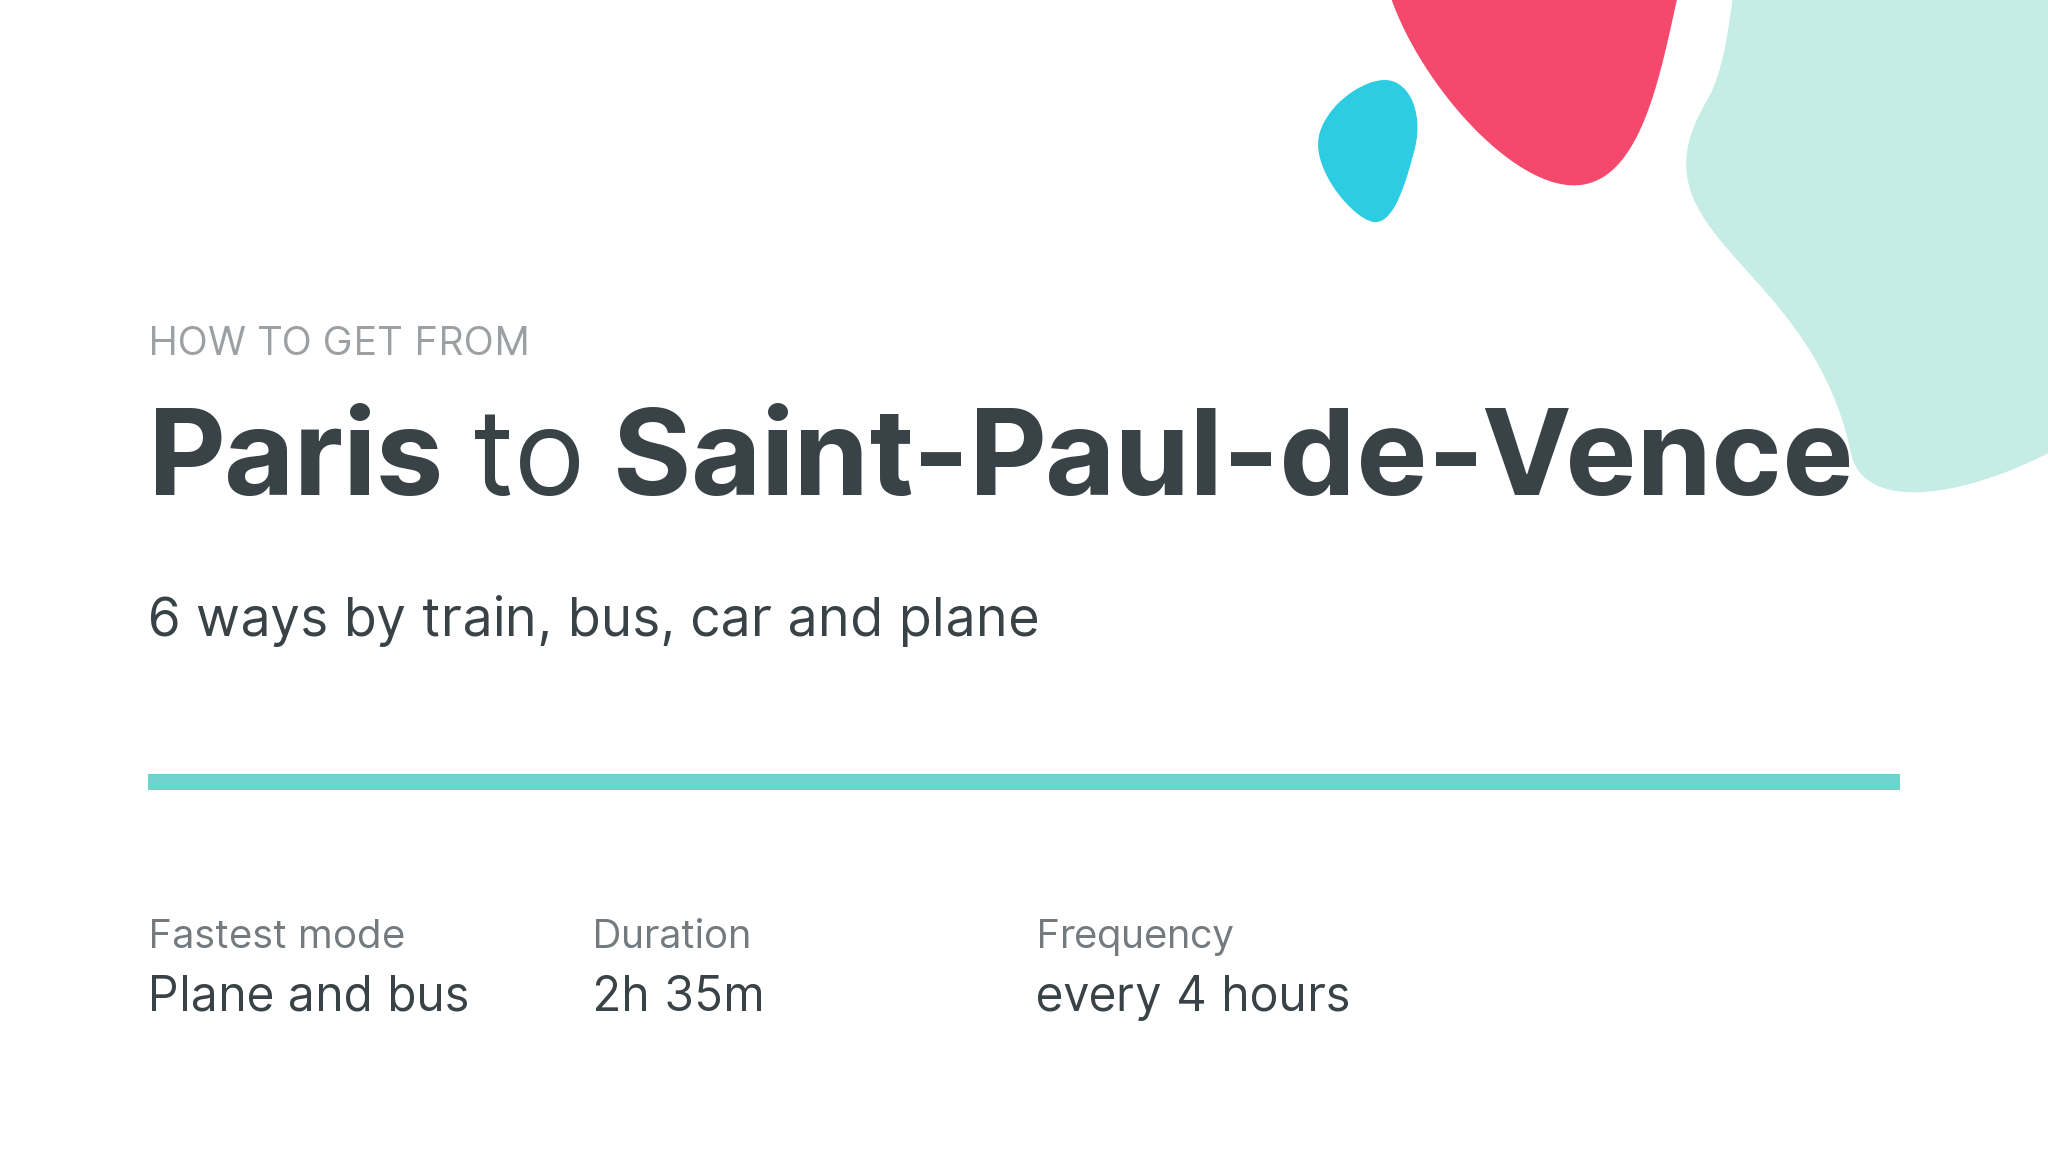 How do I get from Paris to Saint-Paul-de-Vence